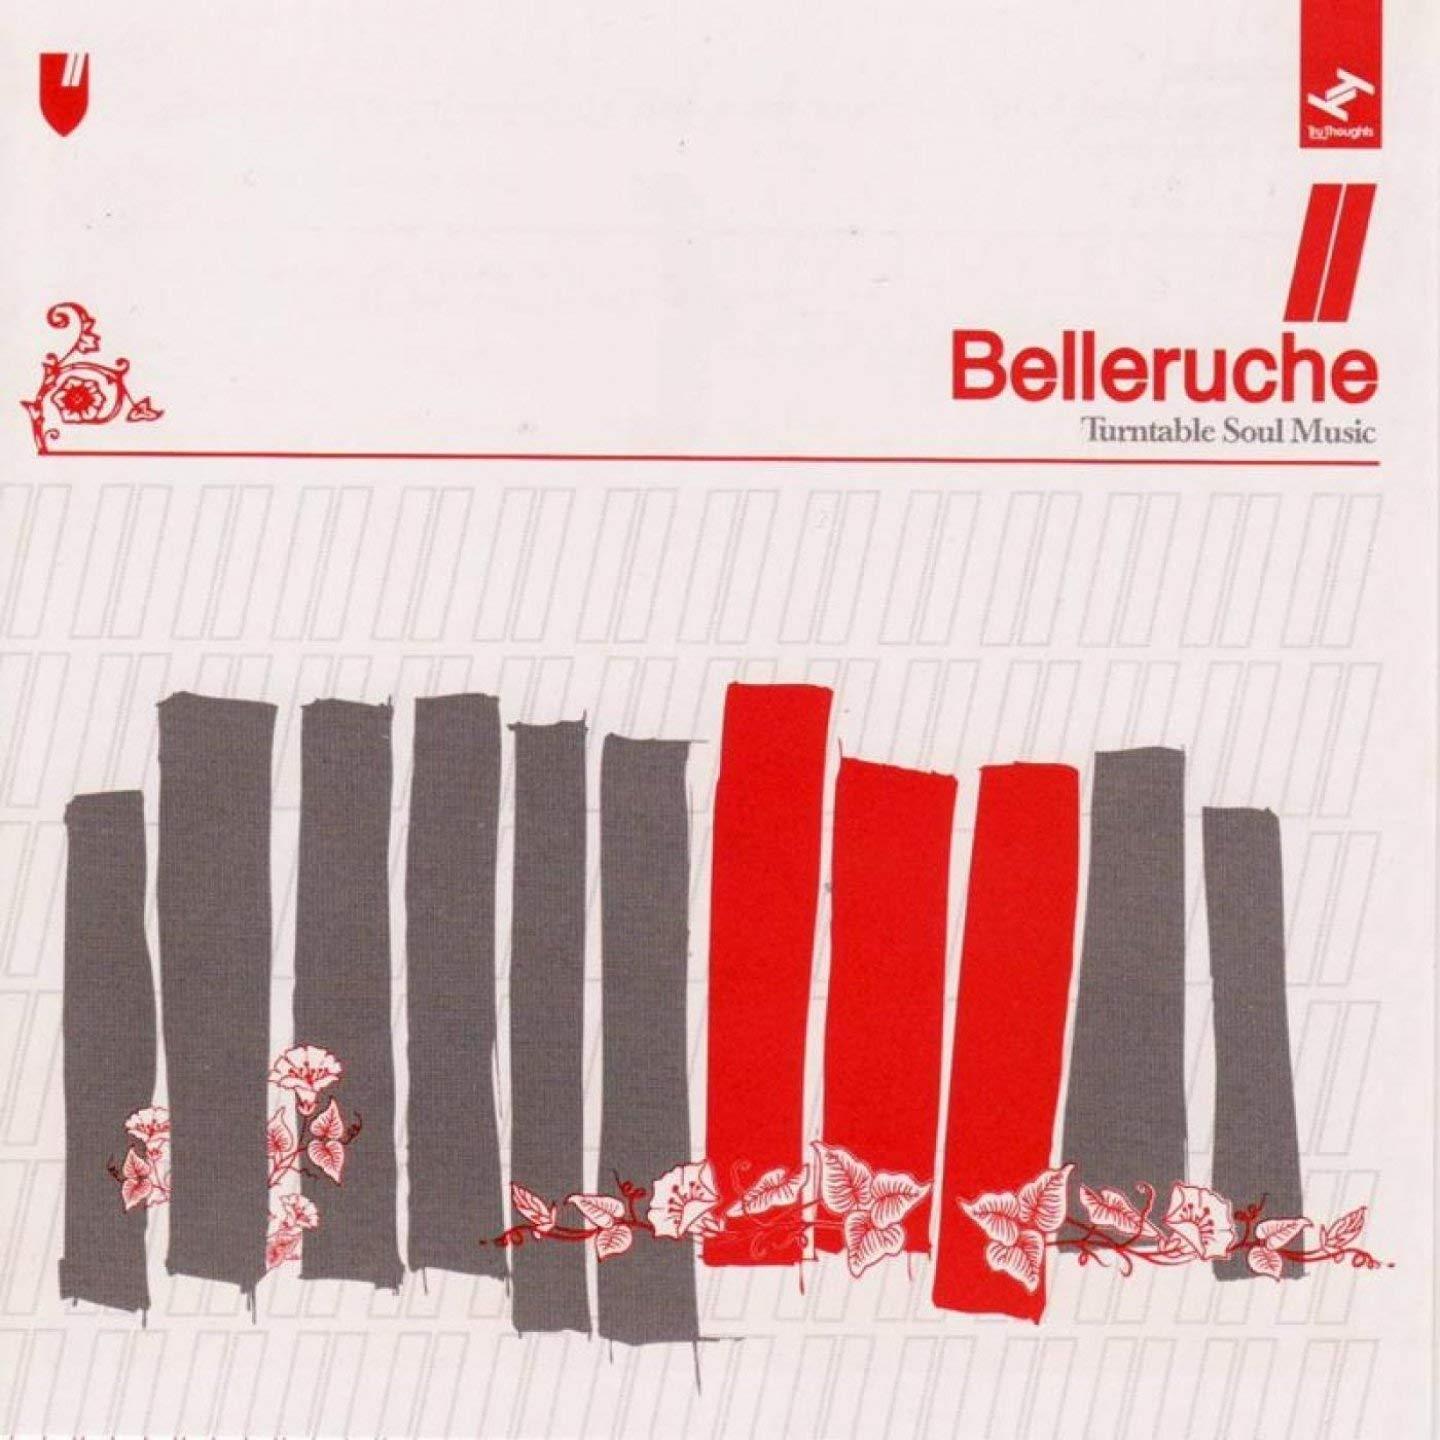 Turntable Soul Music / Belleruche